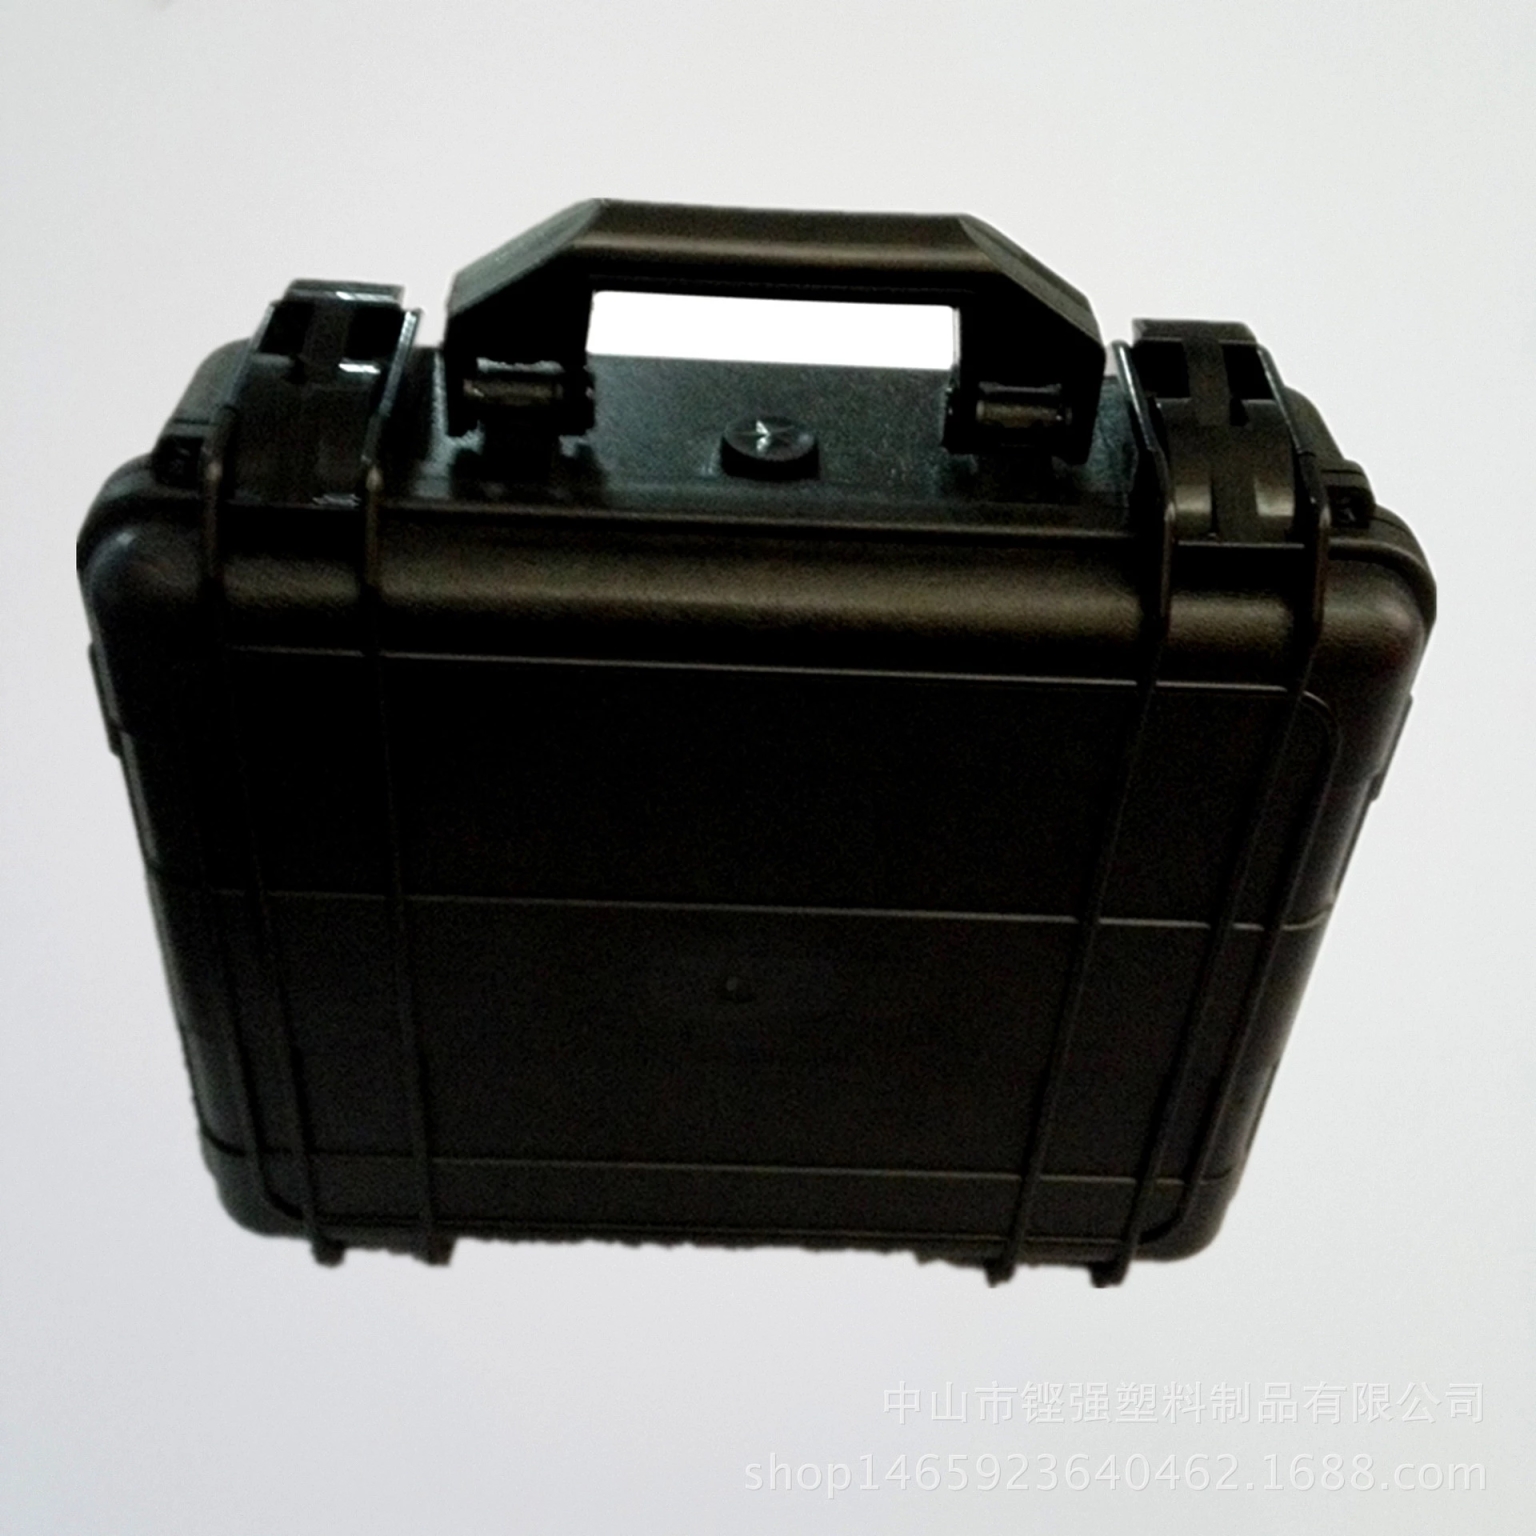 塑料防震箱 塑料仪器设备箱 塑料安全防护箱 摄影器材防护箱 塑料防水箱